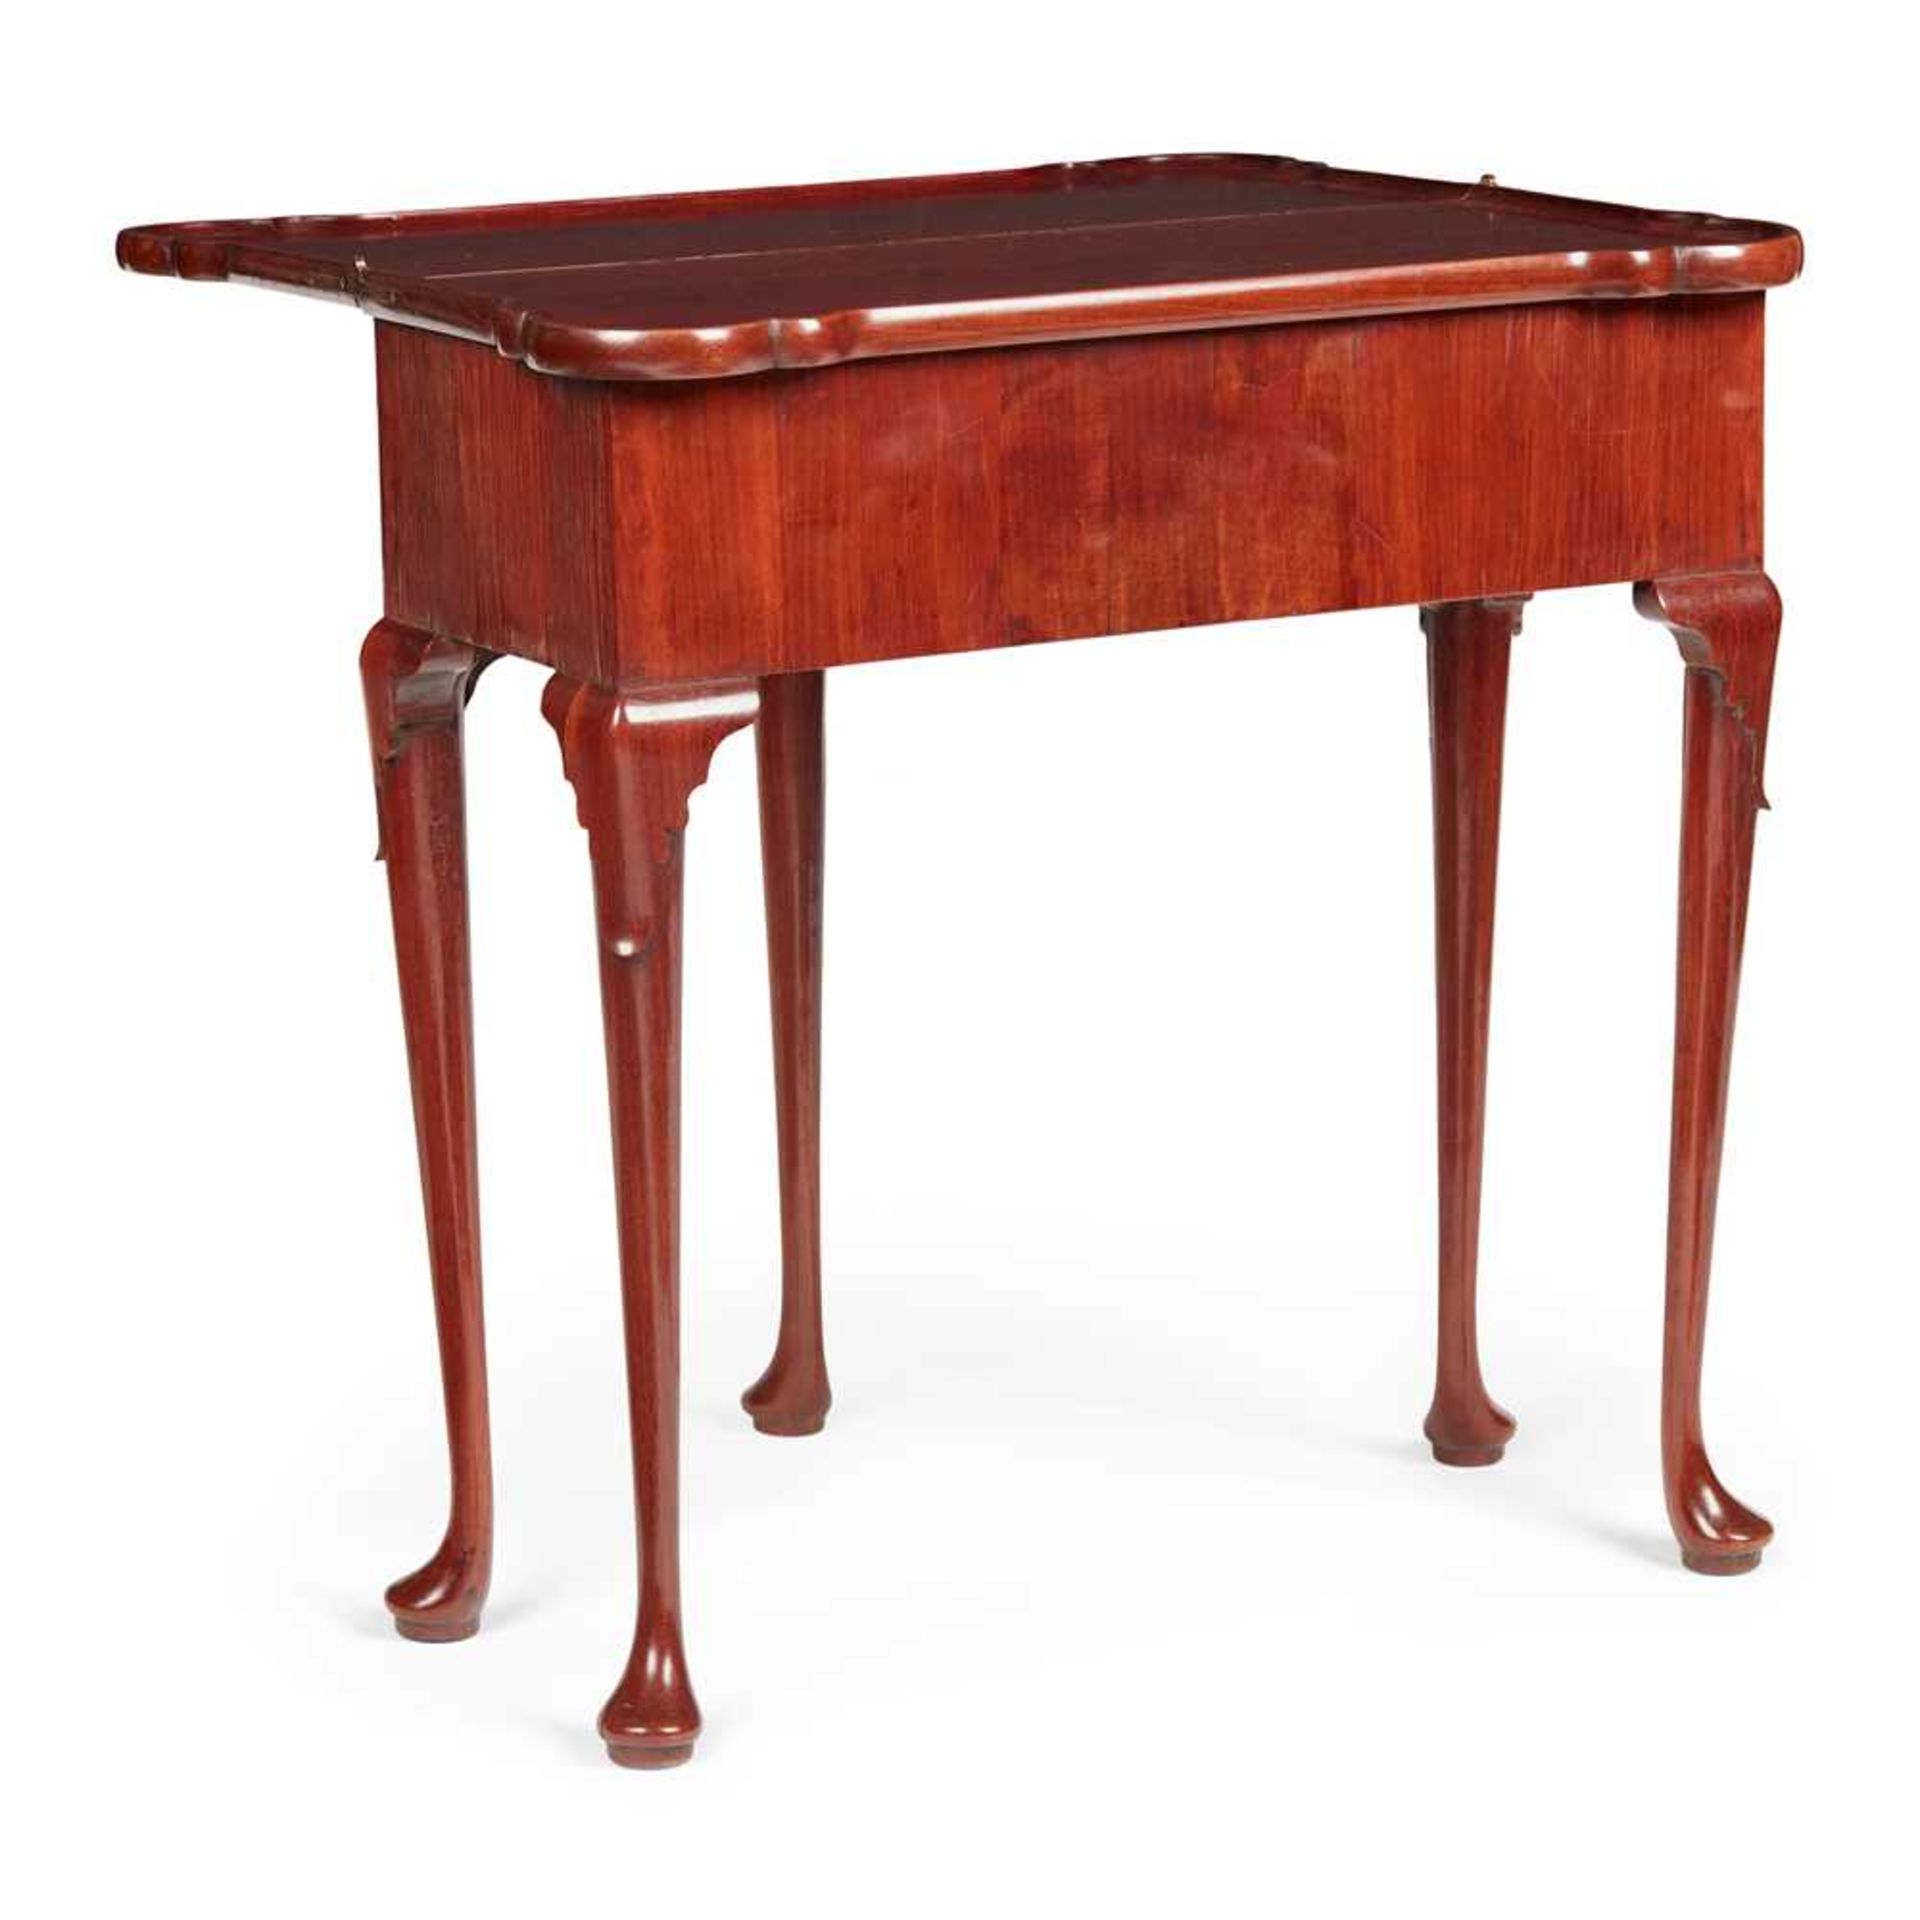 GEORGE II RED WALNUT TEA TABLE MID 18TH CENTURY - Image 2 of 2